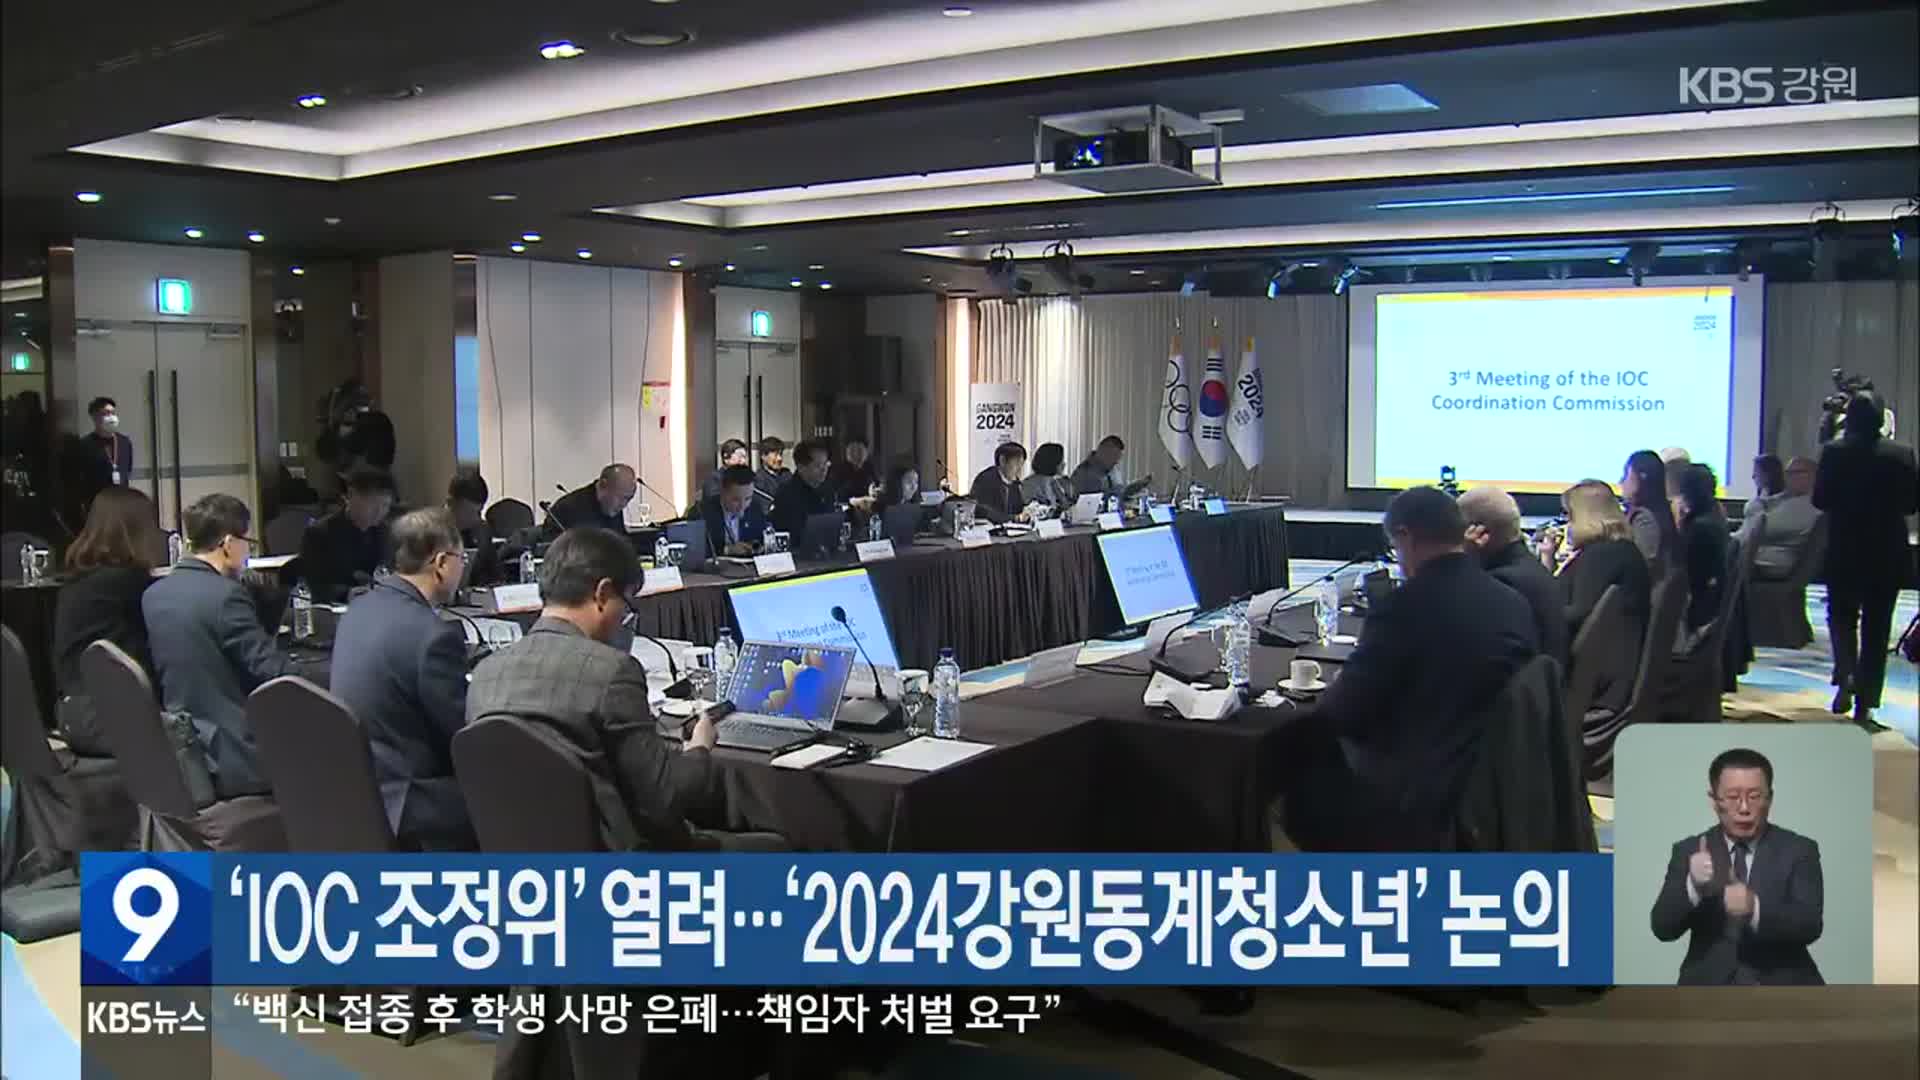 ‘IOC 조정위’ 열려…‘2024강원동계청소년’ 논의